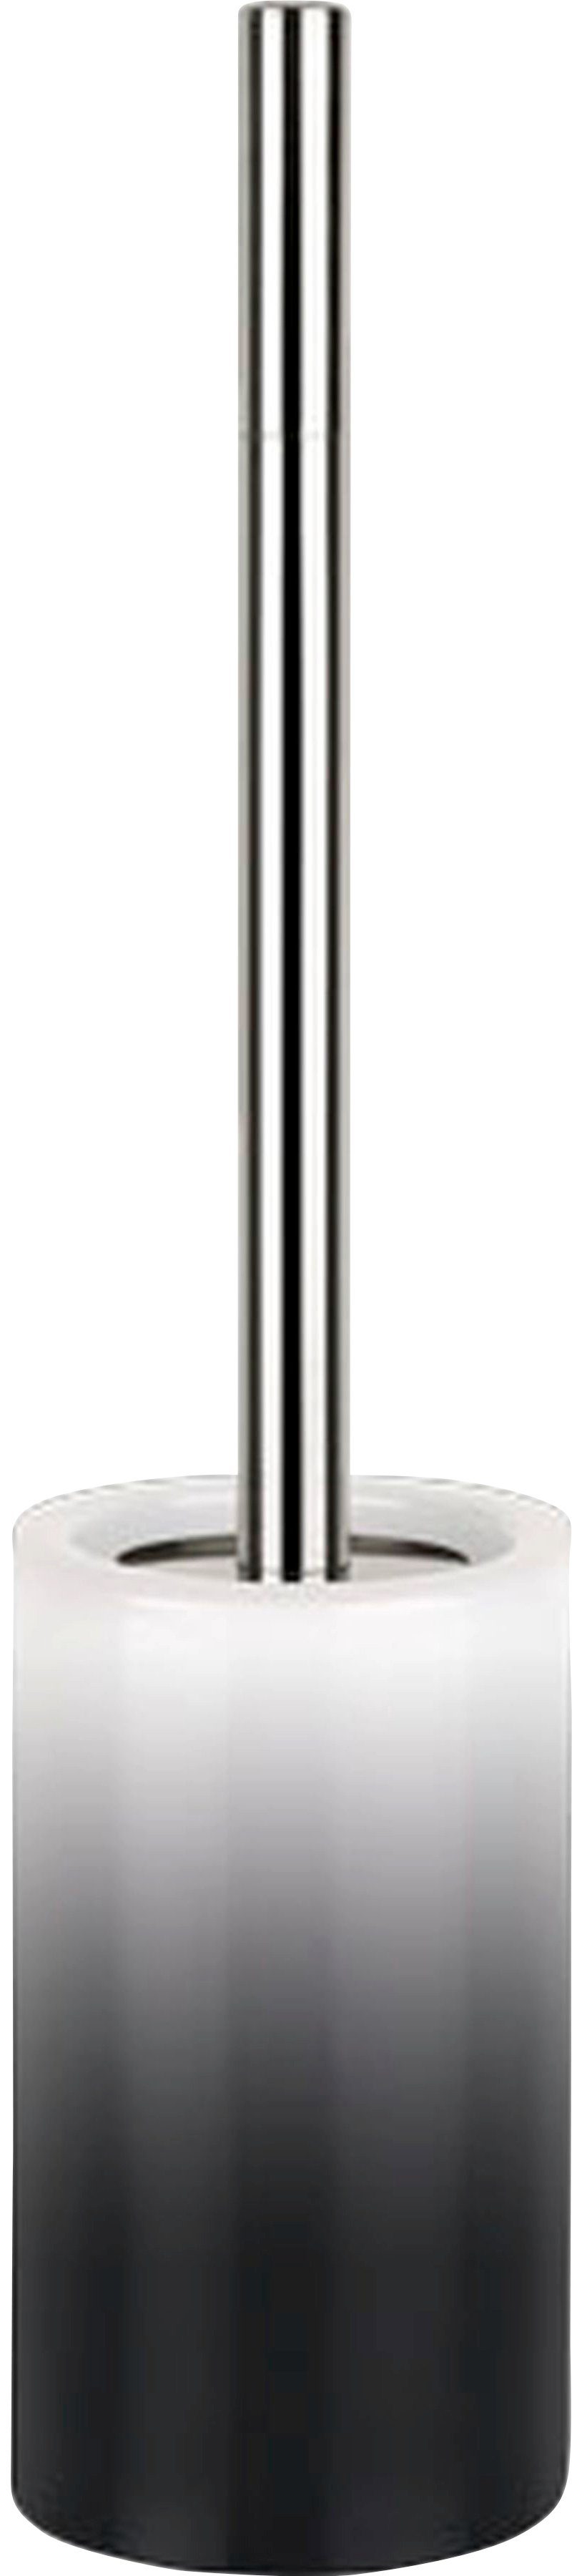 spirella WC-Garnitur TUBE Gradient, Toilettenbürste Hochwertig mit hygienischem Behälter schwarz | Toilettenbürsten